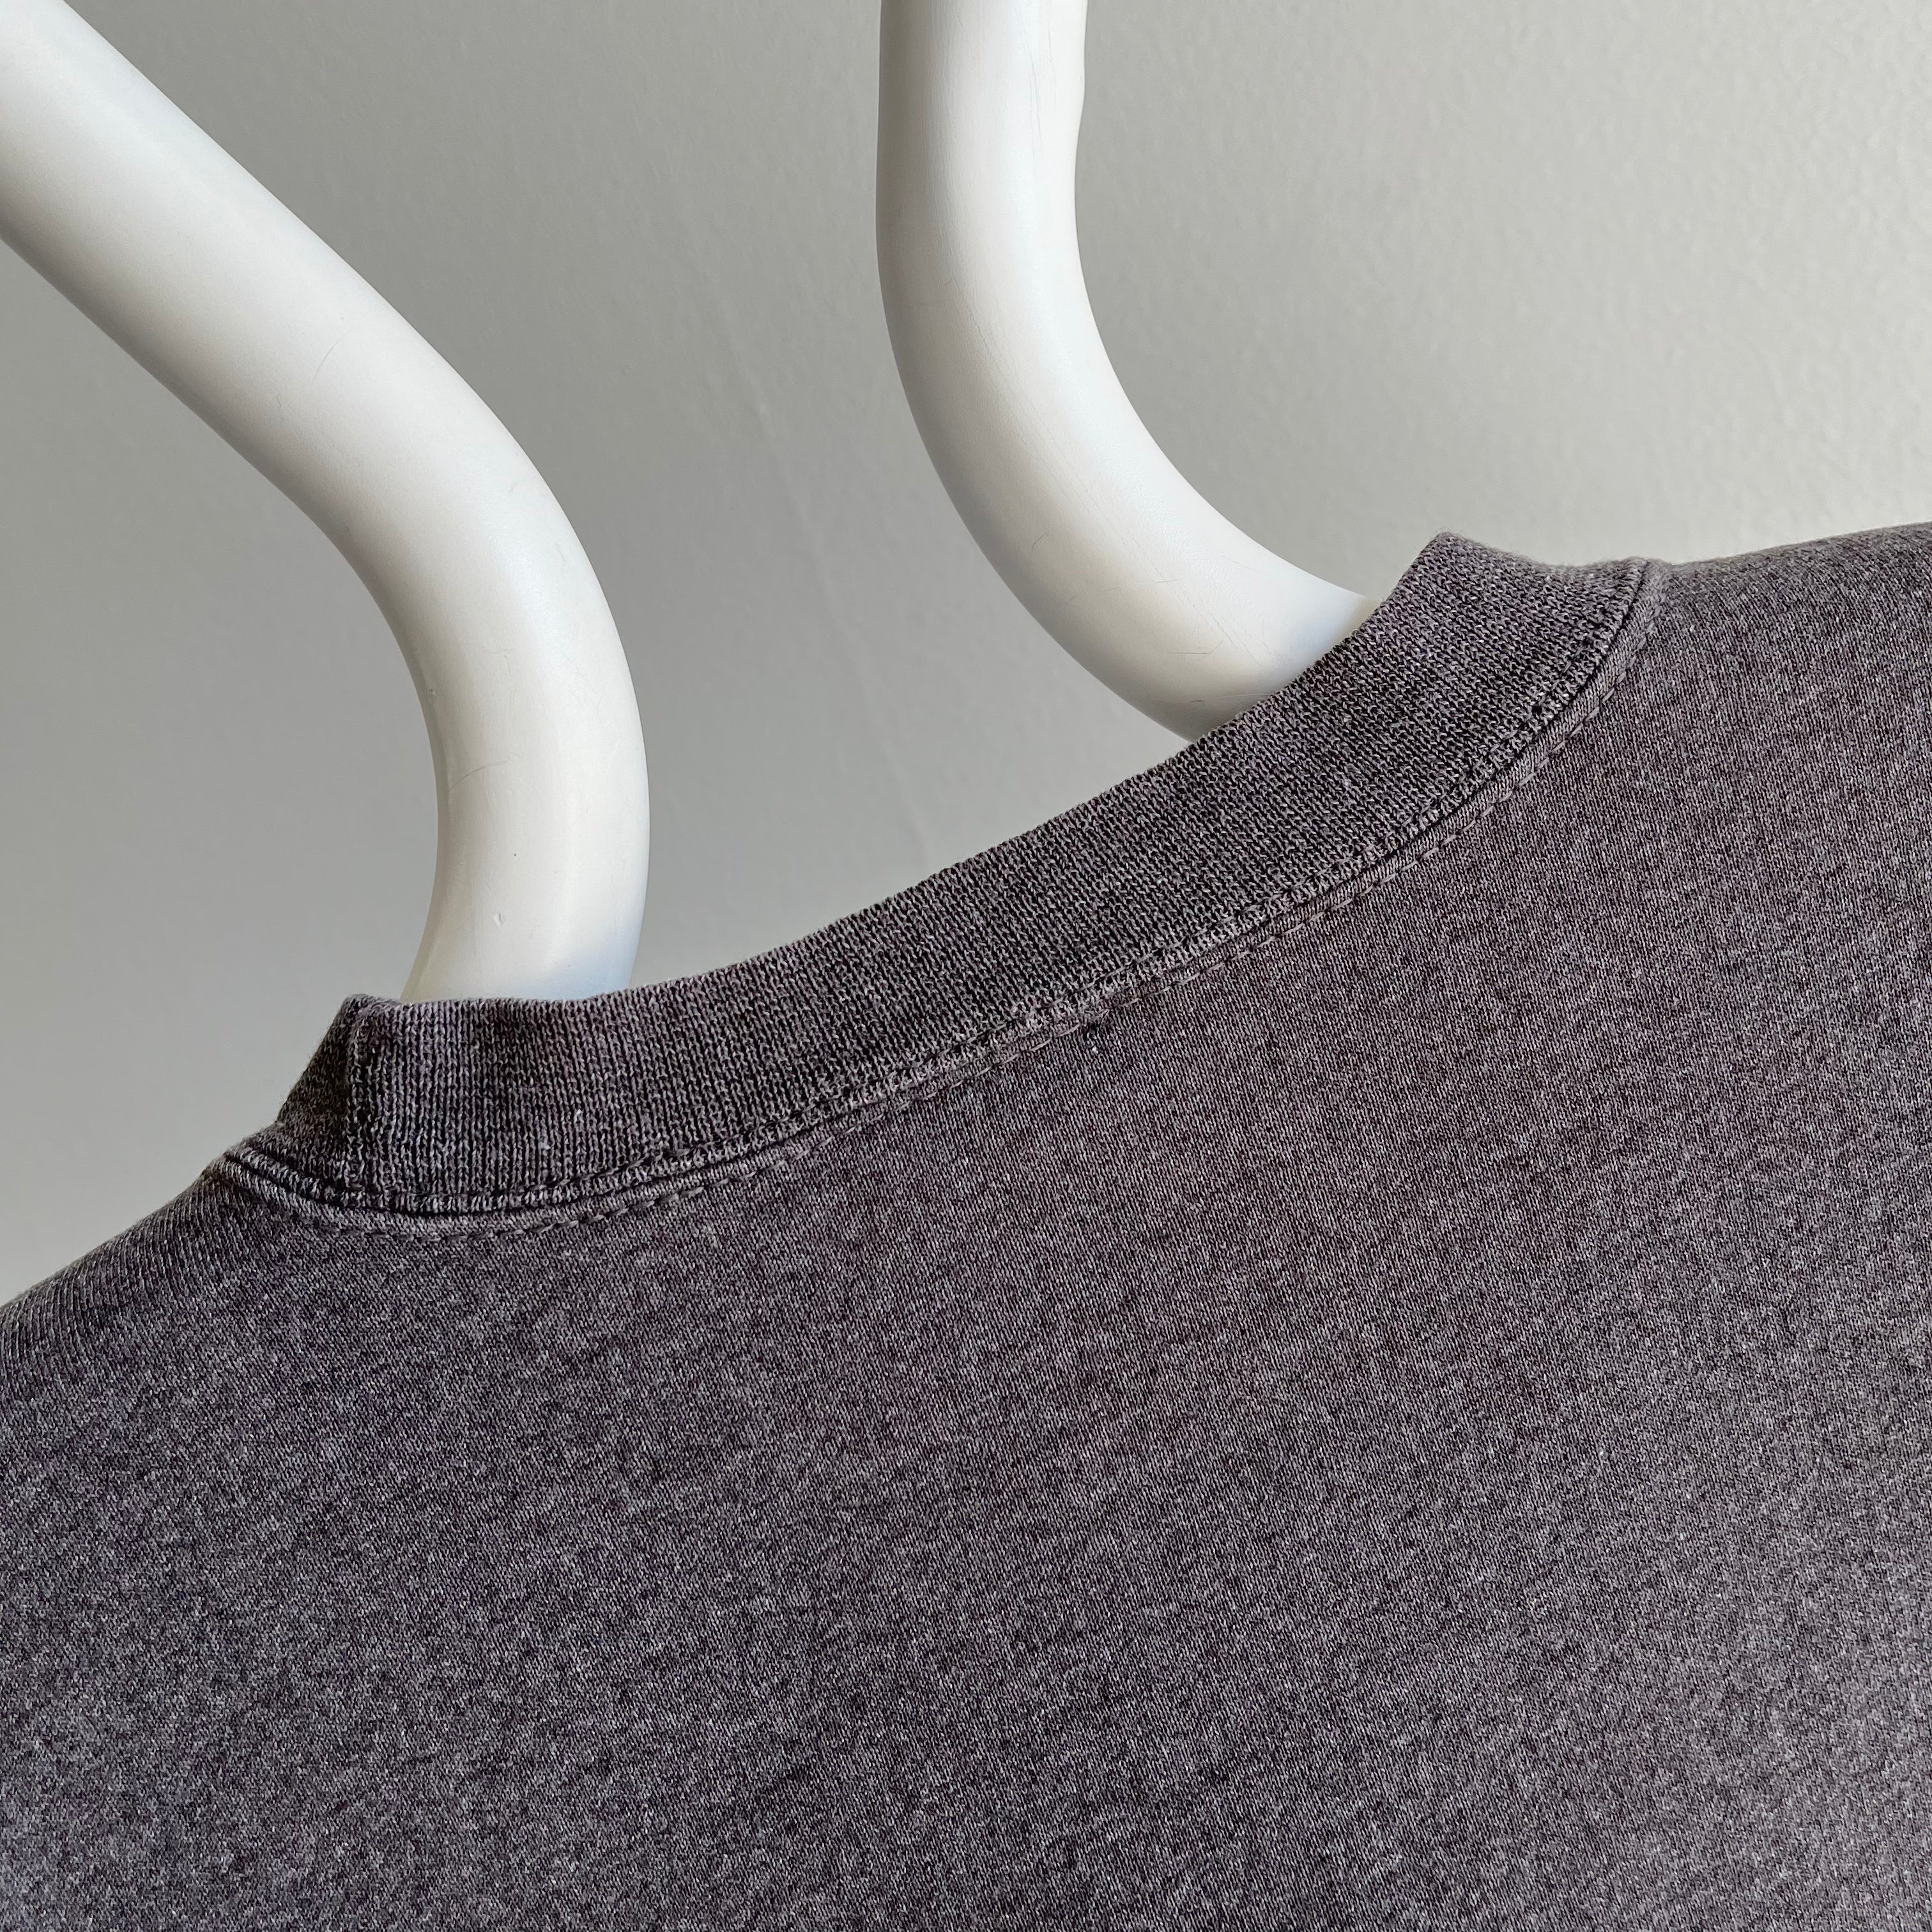 1990s Dark Gray Starter Brand Sweatshirt